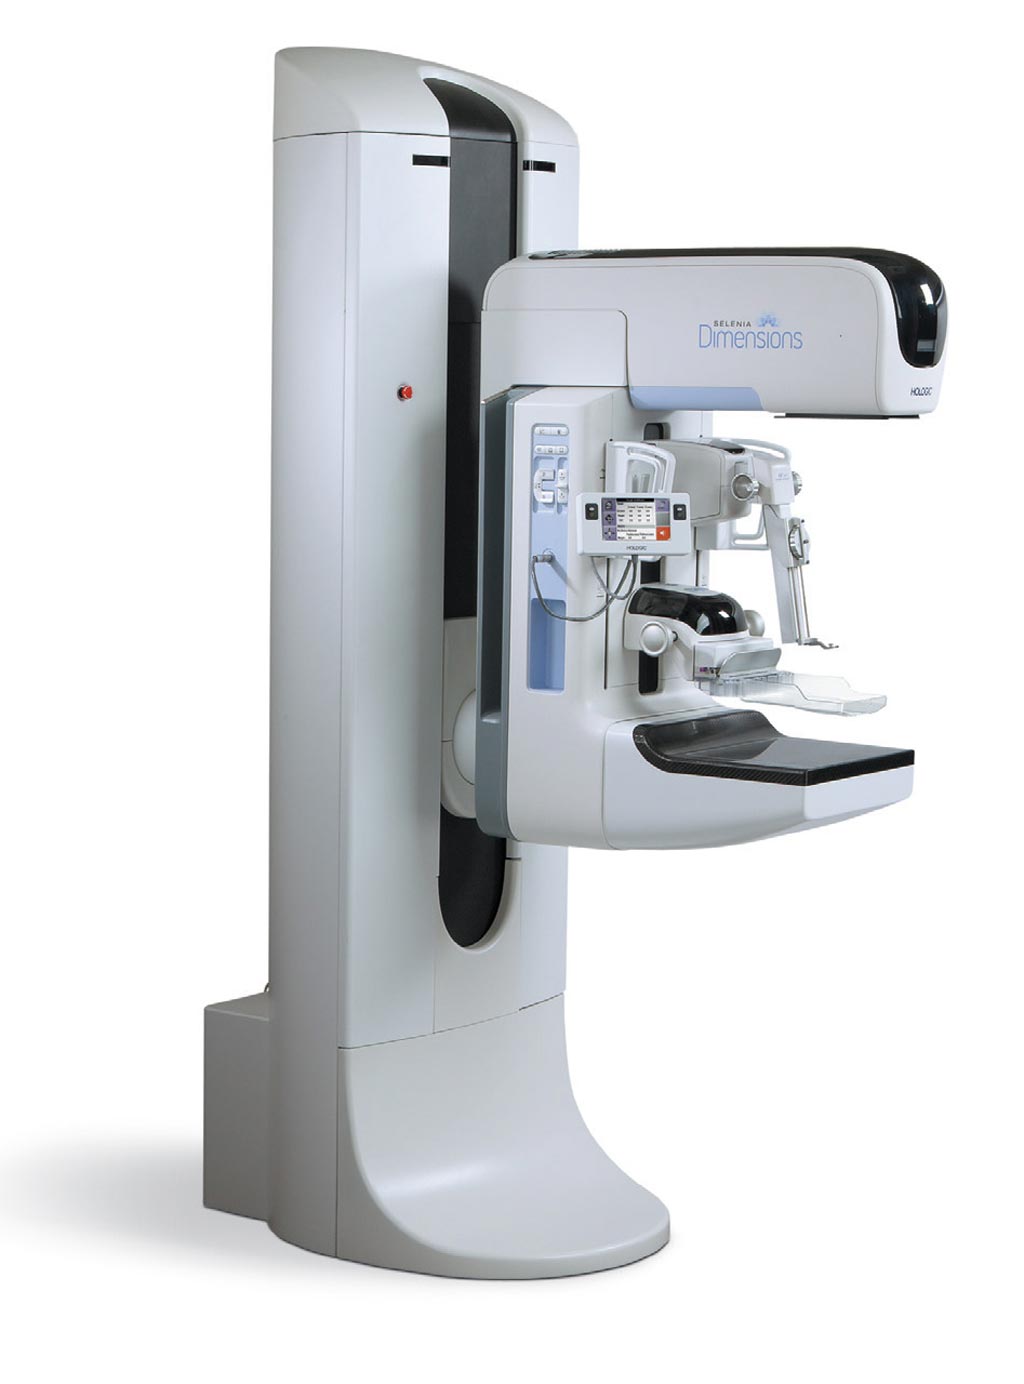 Imagen: El nuevo sistema de mamografía 3Dimensions (Fotografía cortesía de Hologic).